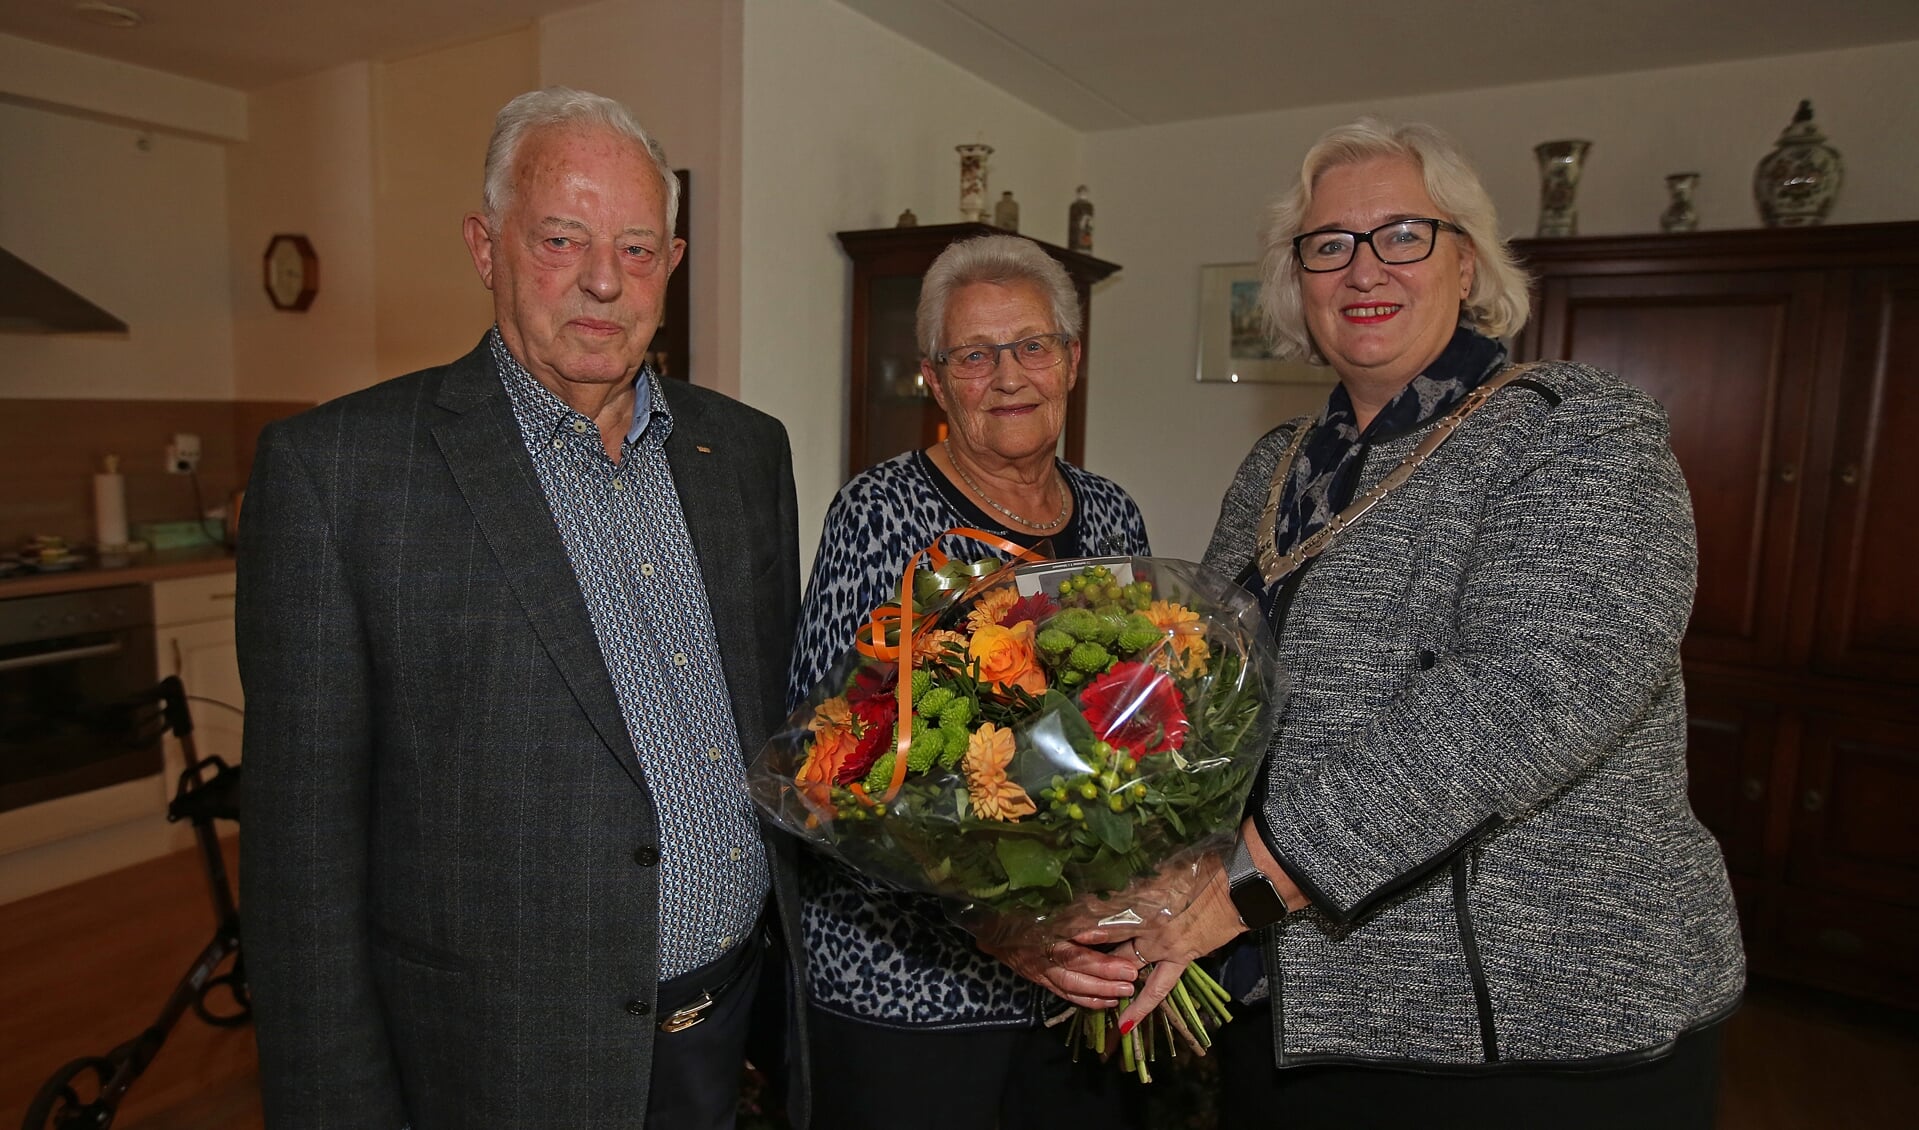 De burgemeester brengt bloemen en de felicitaties over aan Arie en Geertje van der Maarl. 